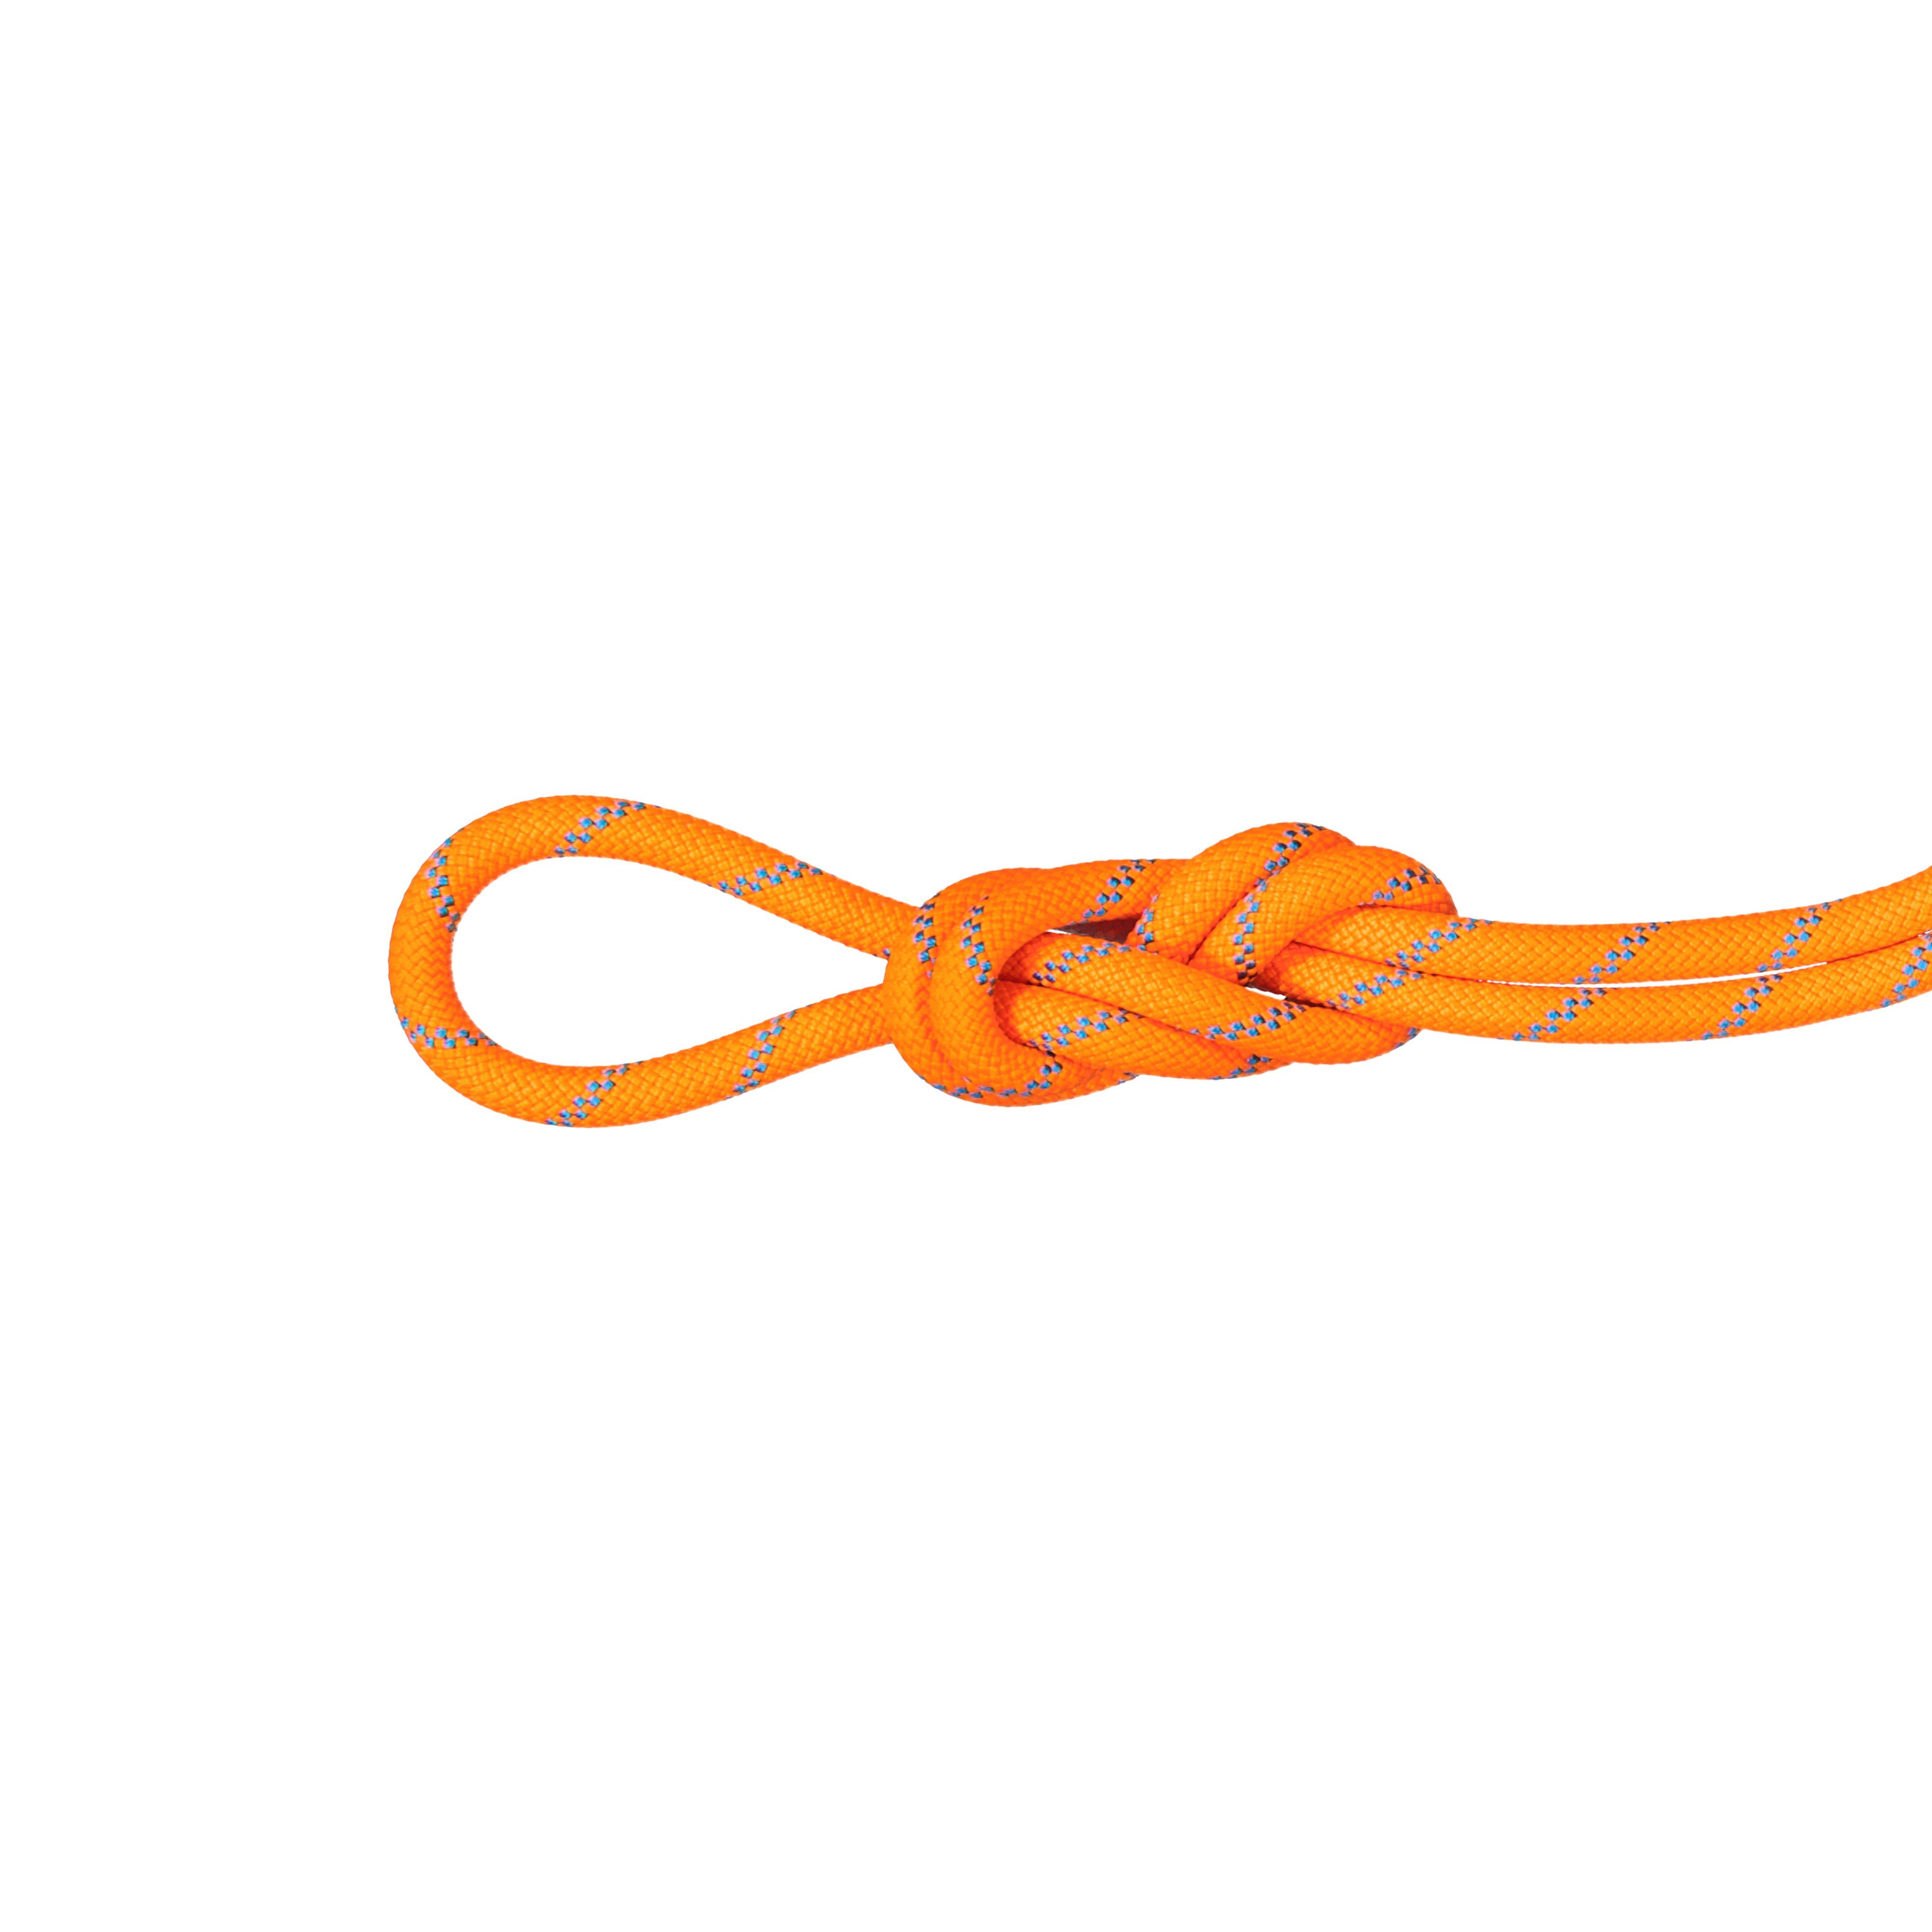 8.7 Alpine Sender Dry Rope - Dry Standard, vibrant orange-ocean, 30 m thumbnail